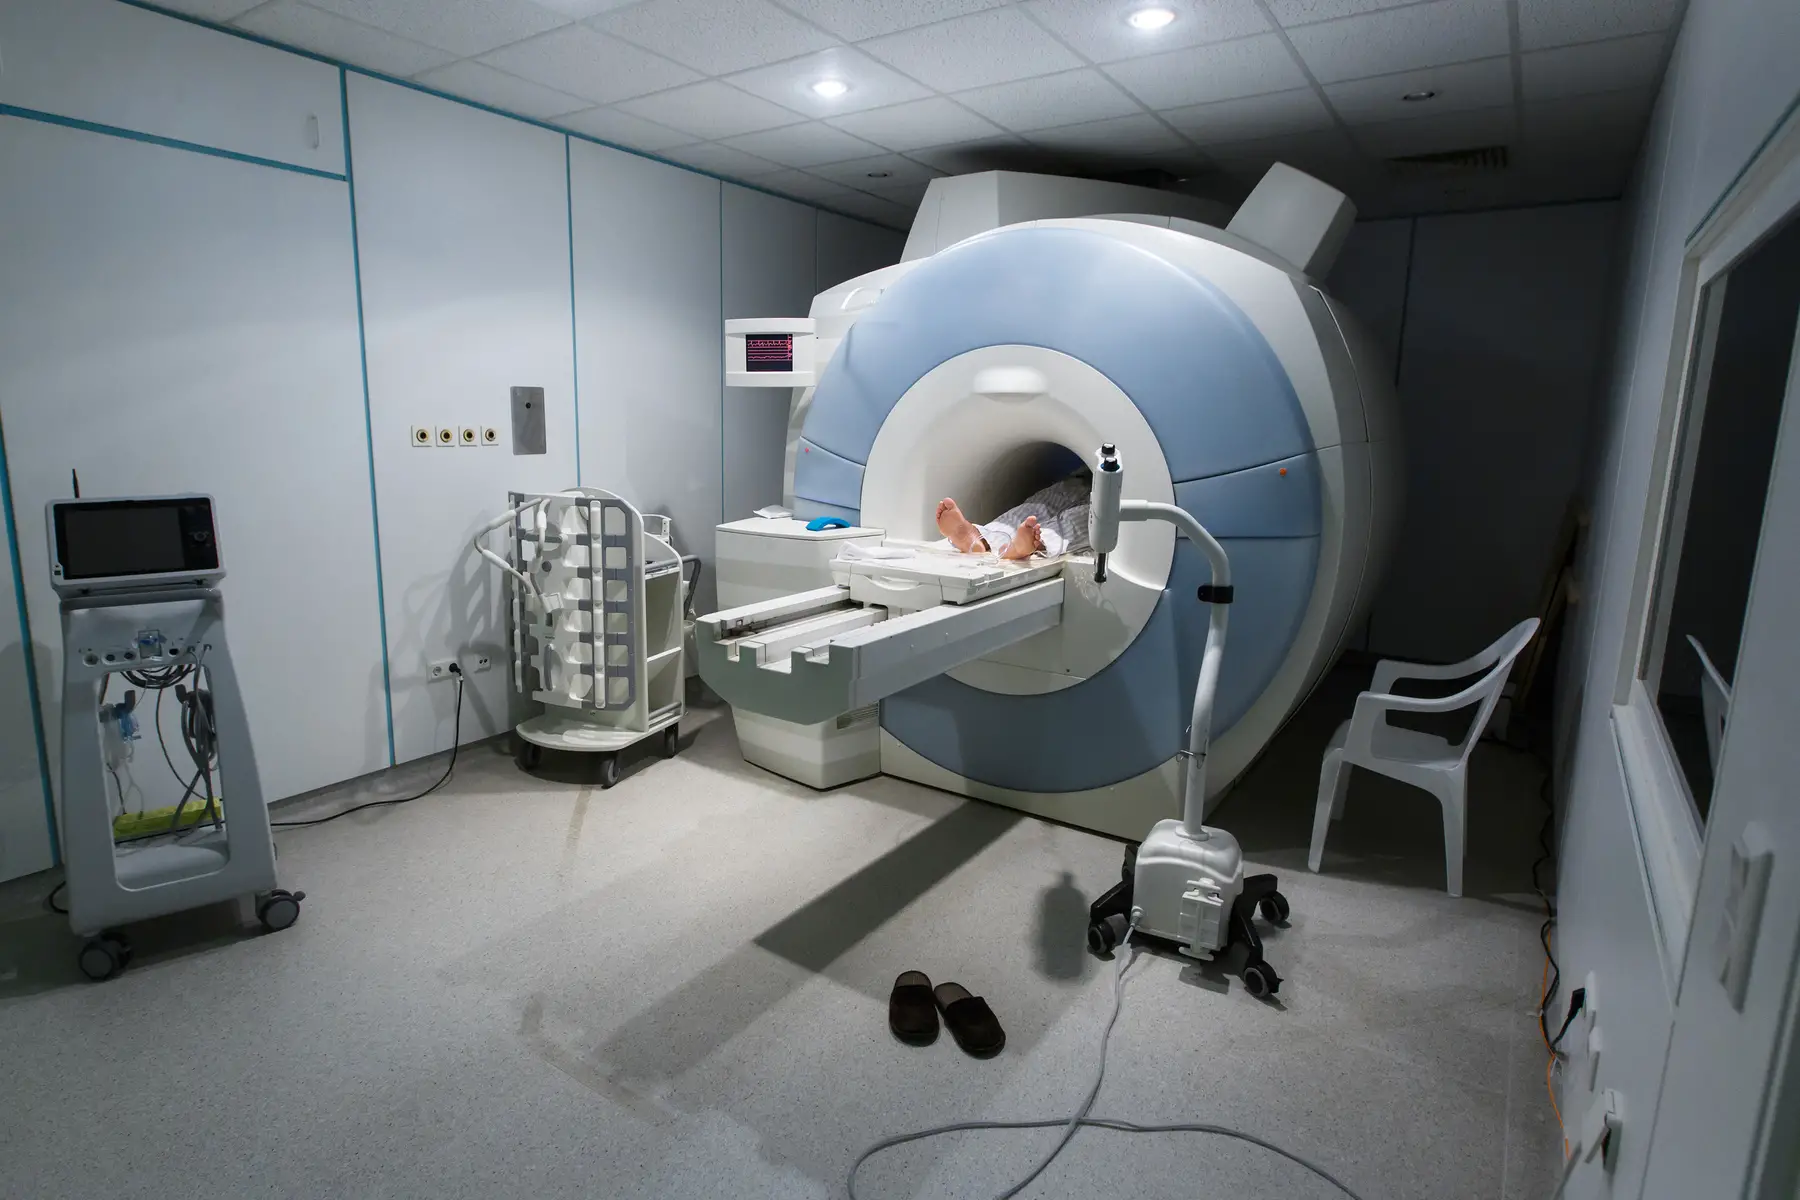 Cancer screening with MRI machine